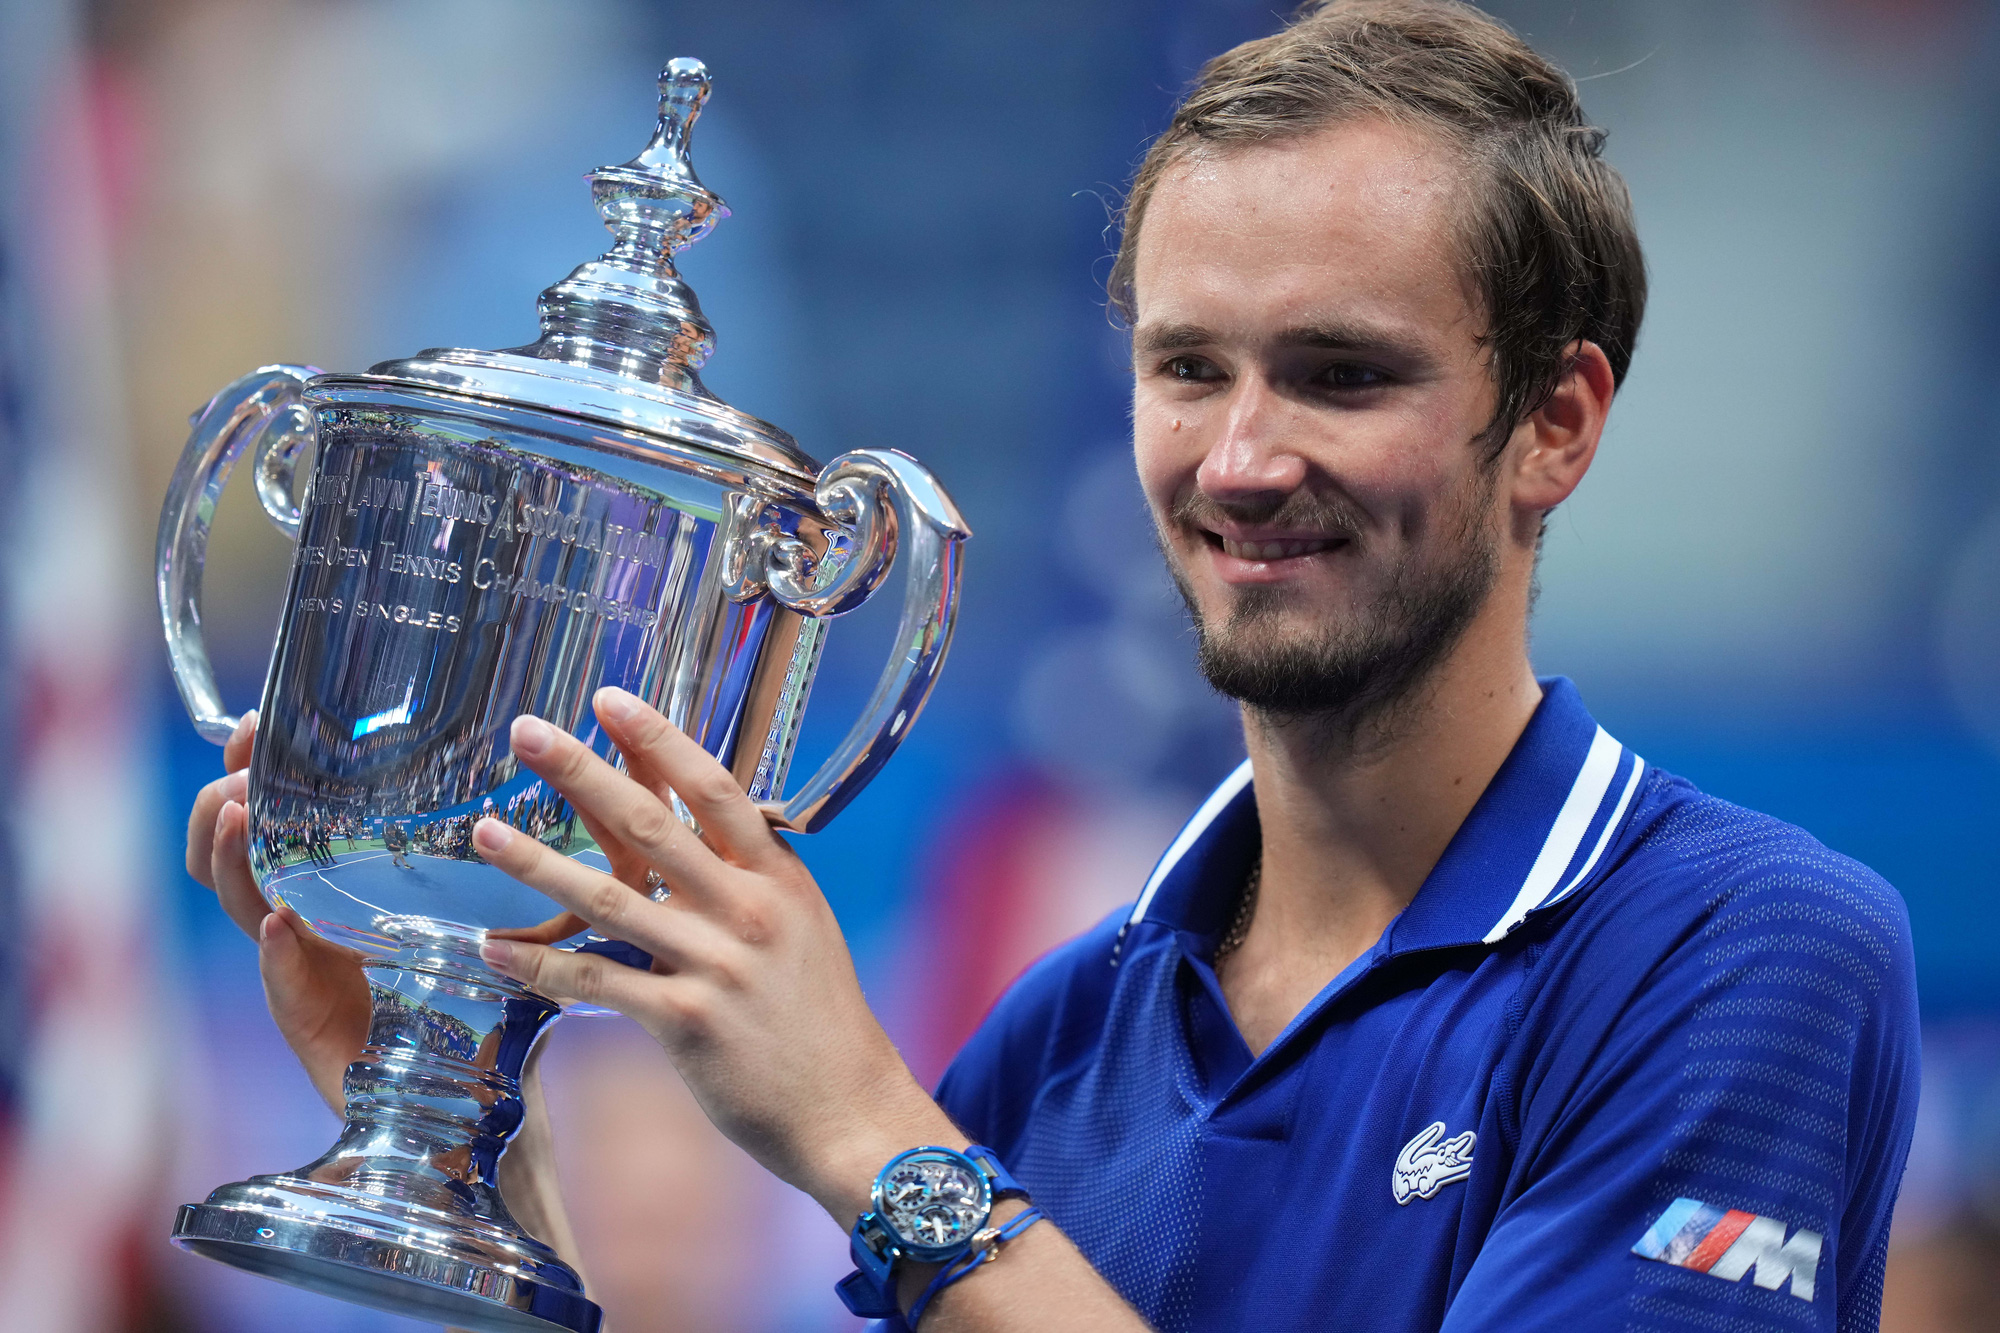 Đánh bại Djokovic, Medvedev vô địch US Open 2021 - Ảnh 7.